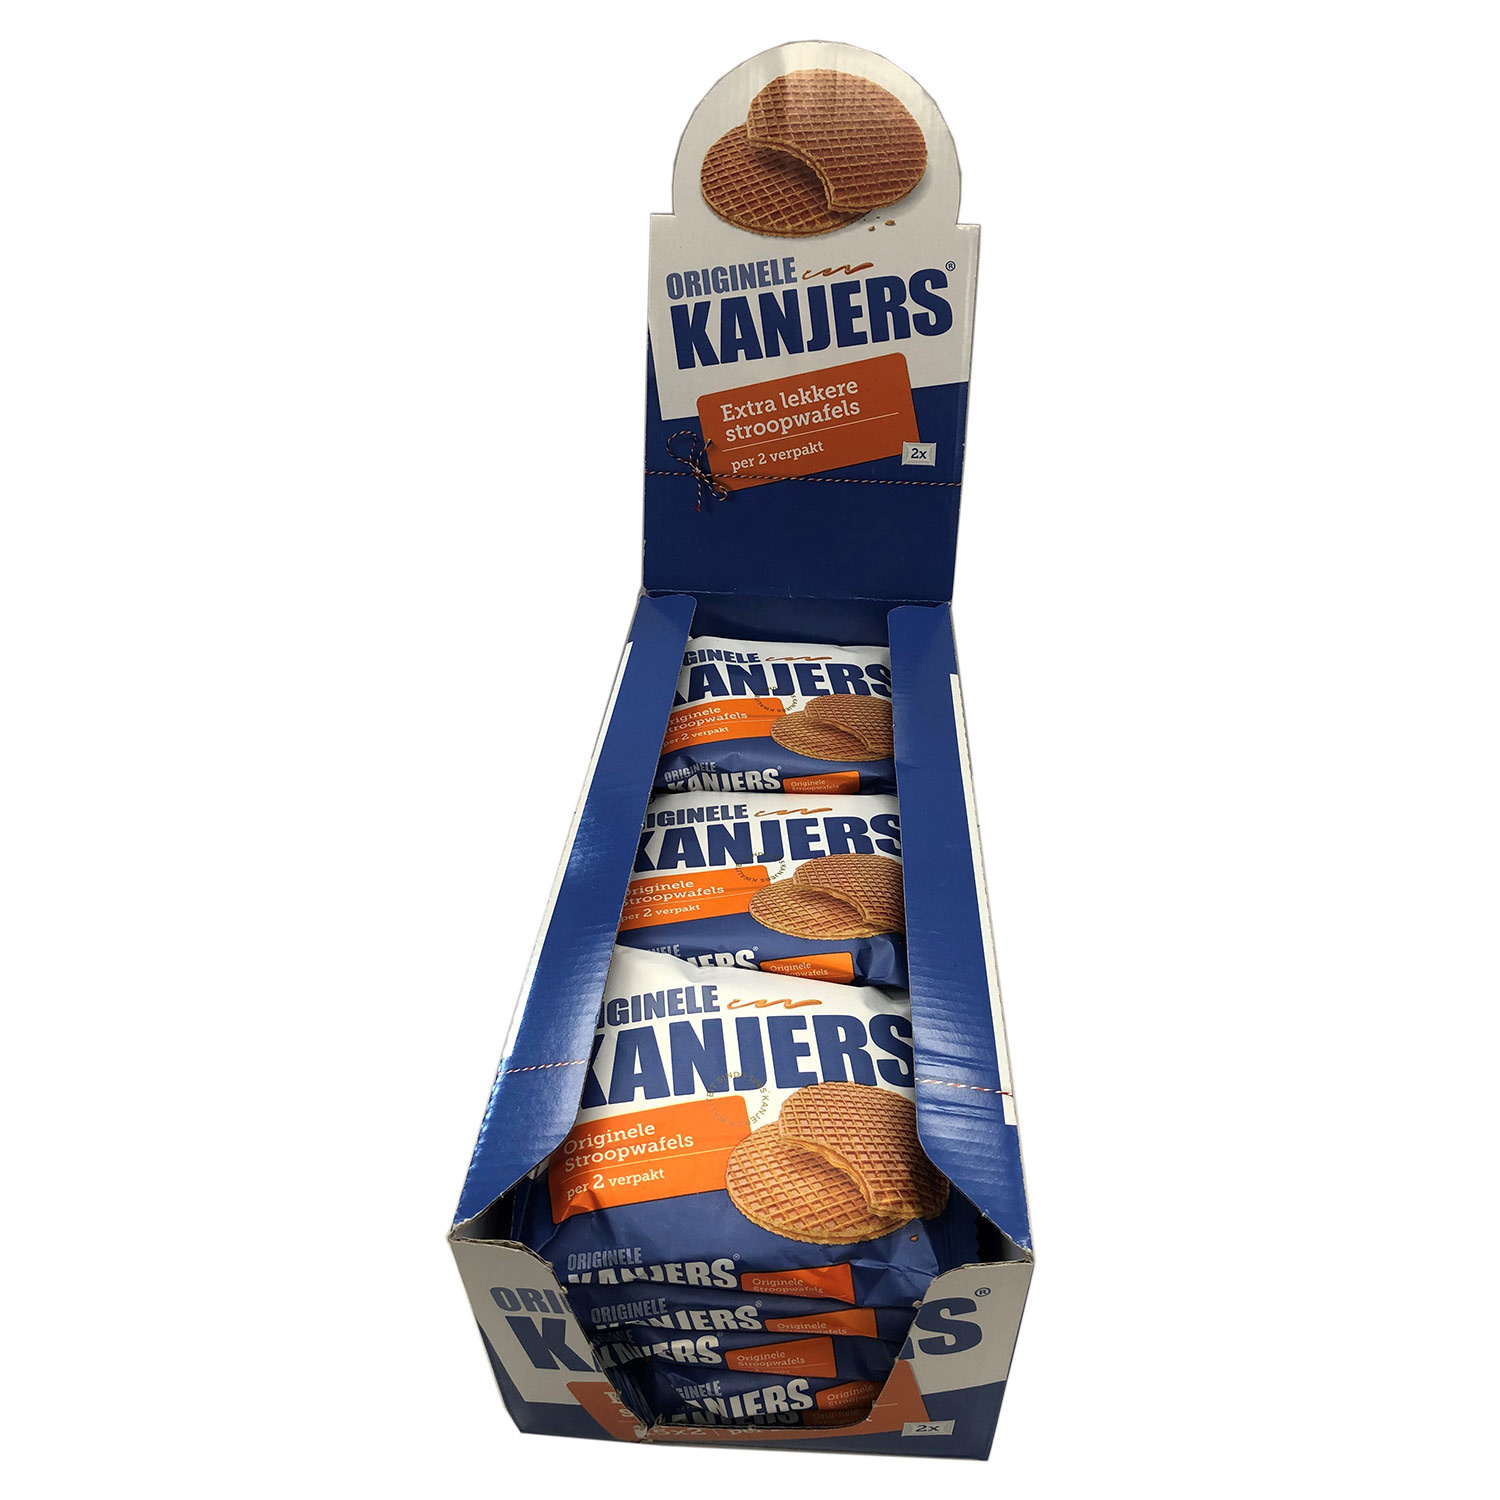 Kanjers Kanjers Melk Chocolade & Kanjers Original Displaybox Deal